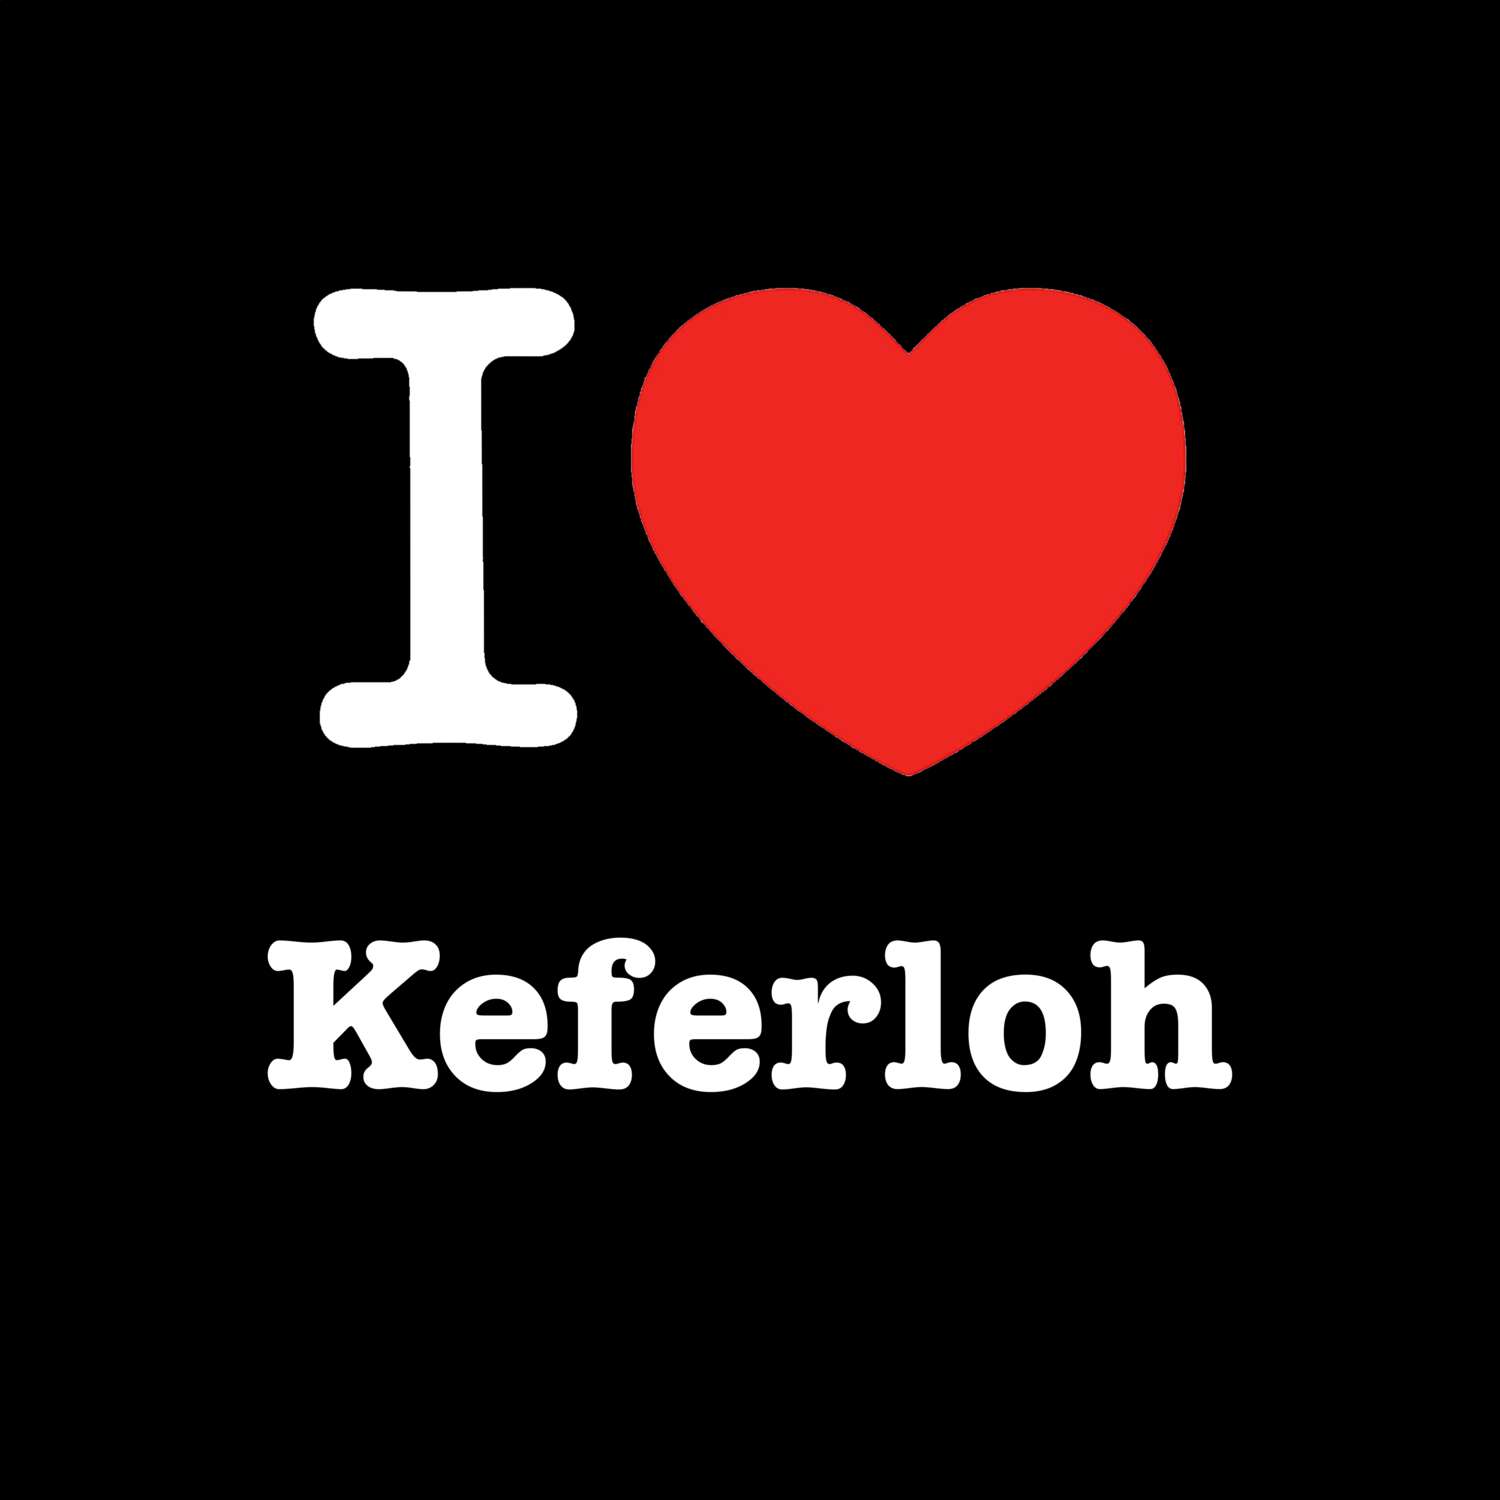 Keferloh T-Shirt »I love«